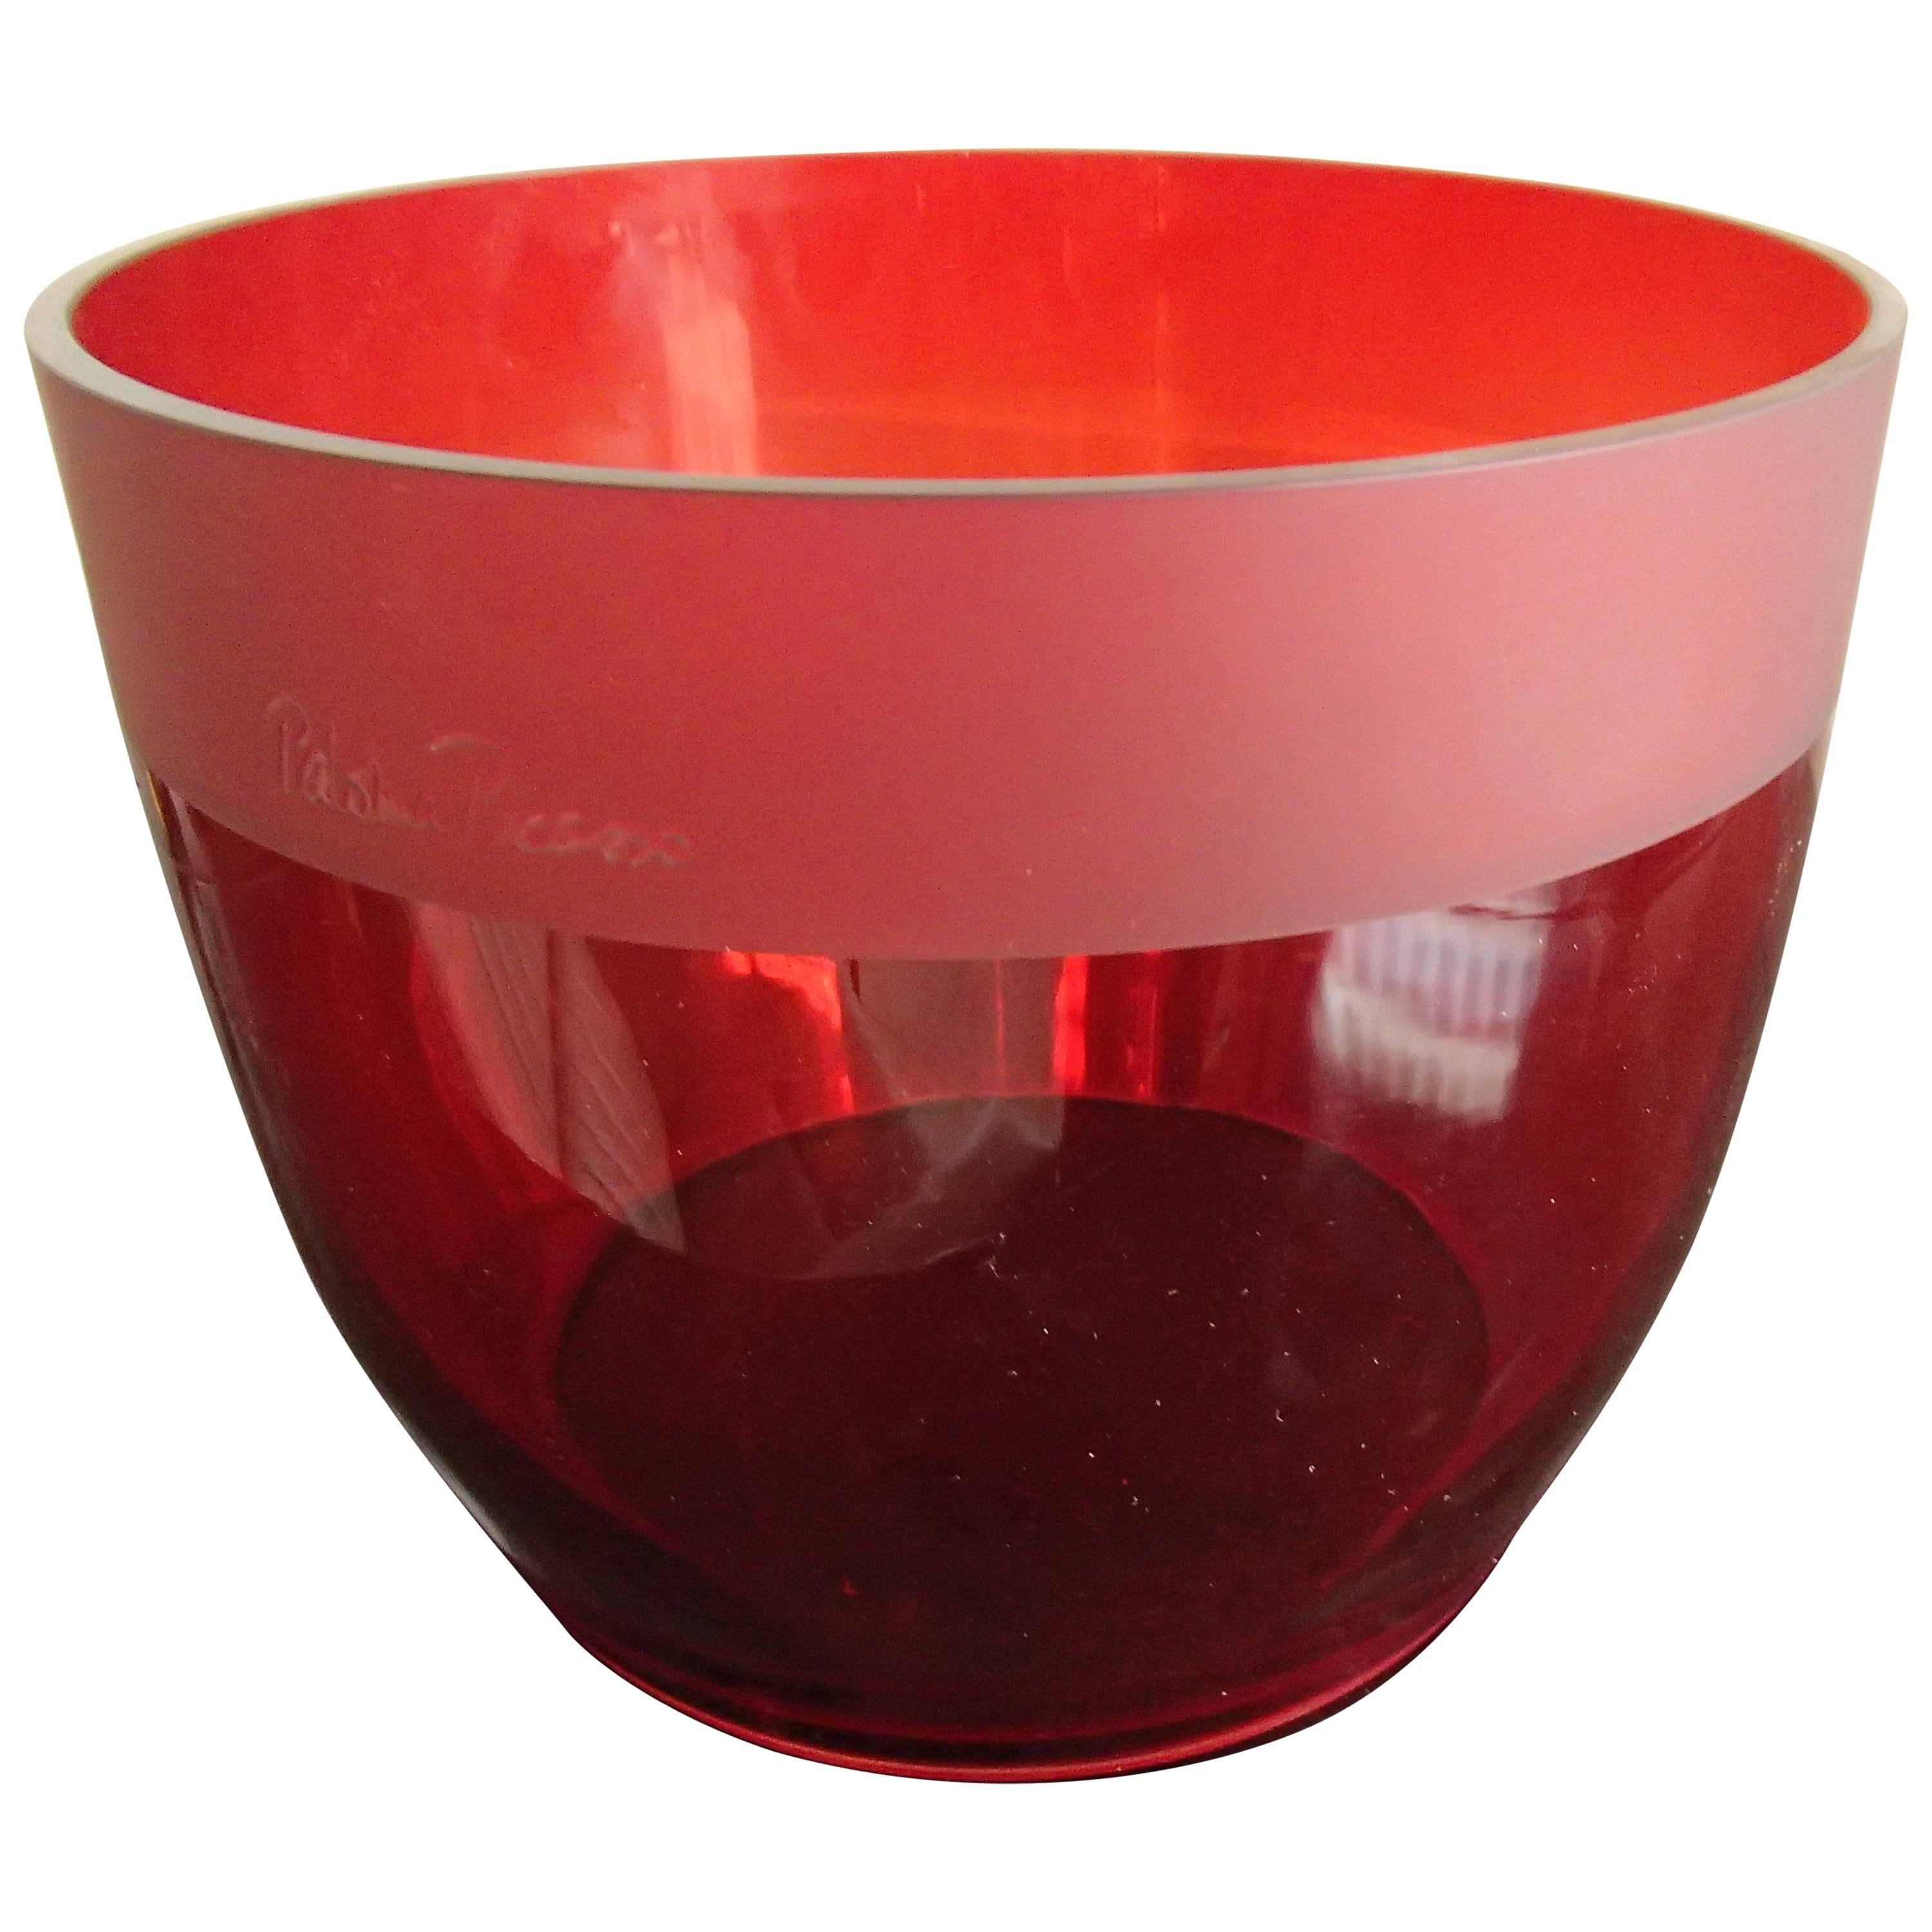 Grand verre rouge moderne signé par Paloma Picasso